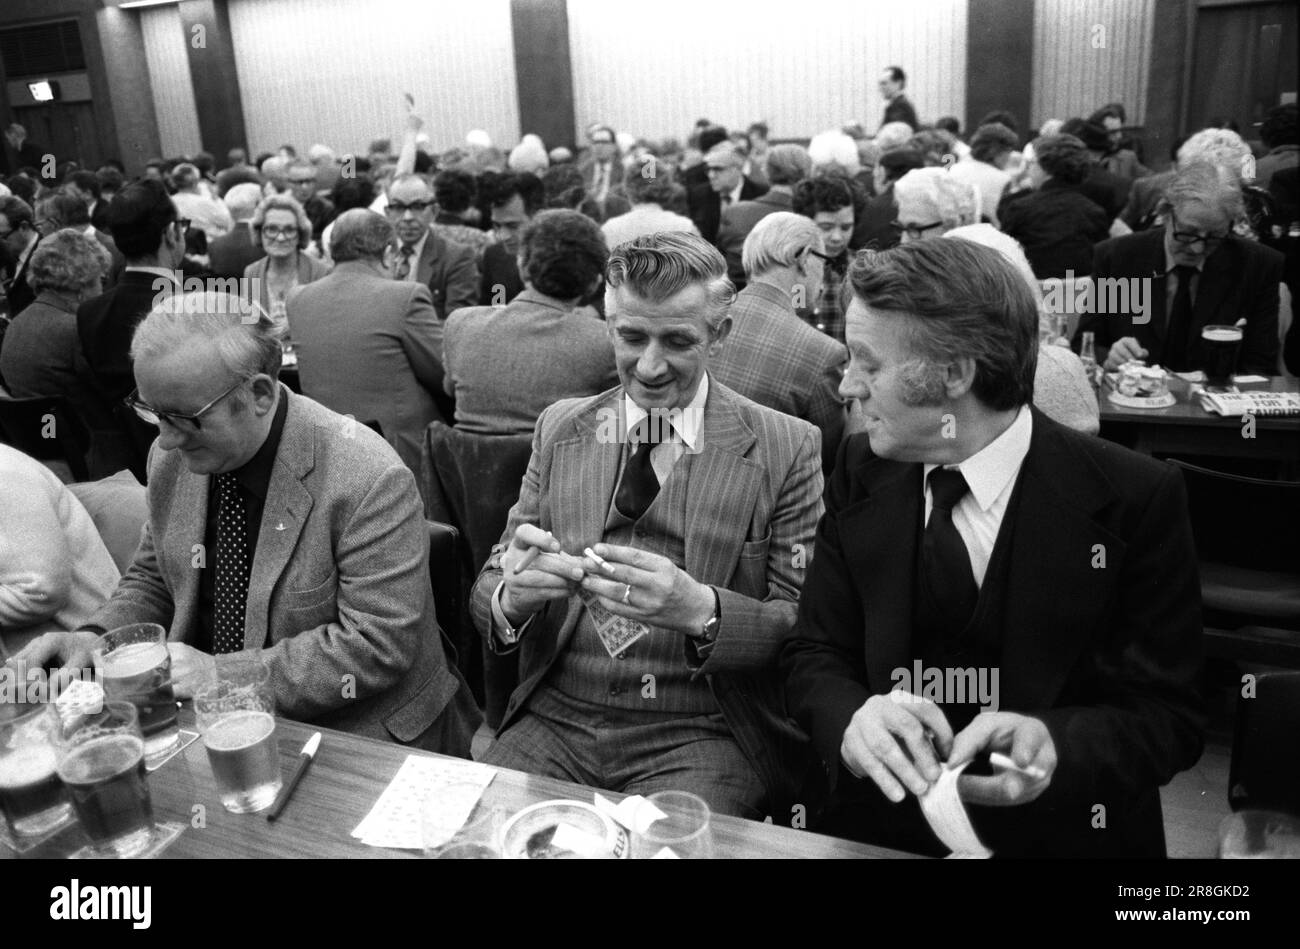 Männer spielen Bingo UK 1980er. Coventry Working Mens Club, Samstagabend Bingo Abendunterhaltung. Sie sehen schick aus, zwei Männer, die sich unterhalten und rauchen. Coventry, England, etwa 1981. Stockfoto